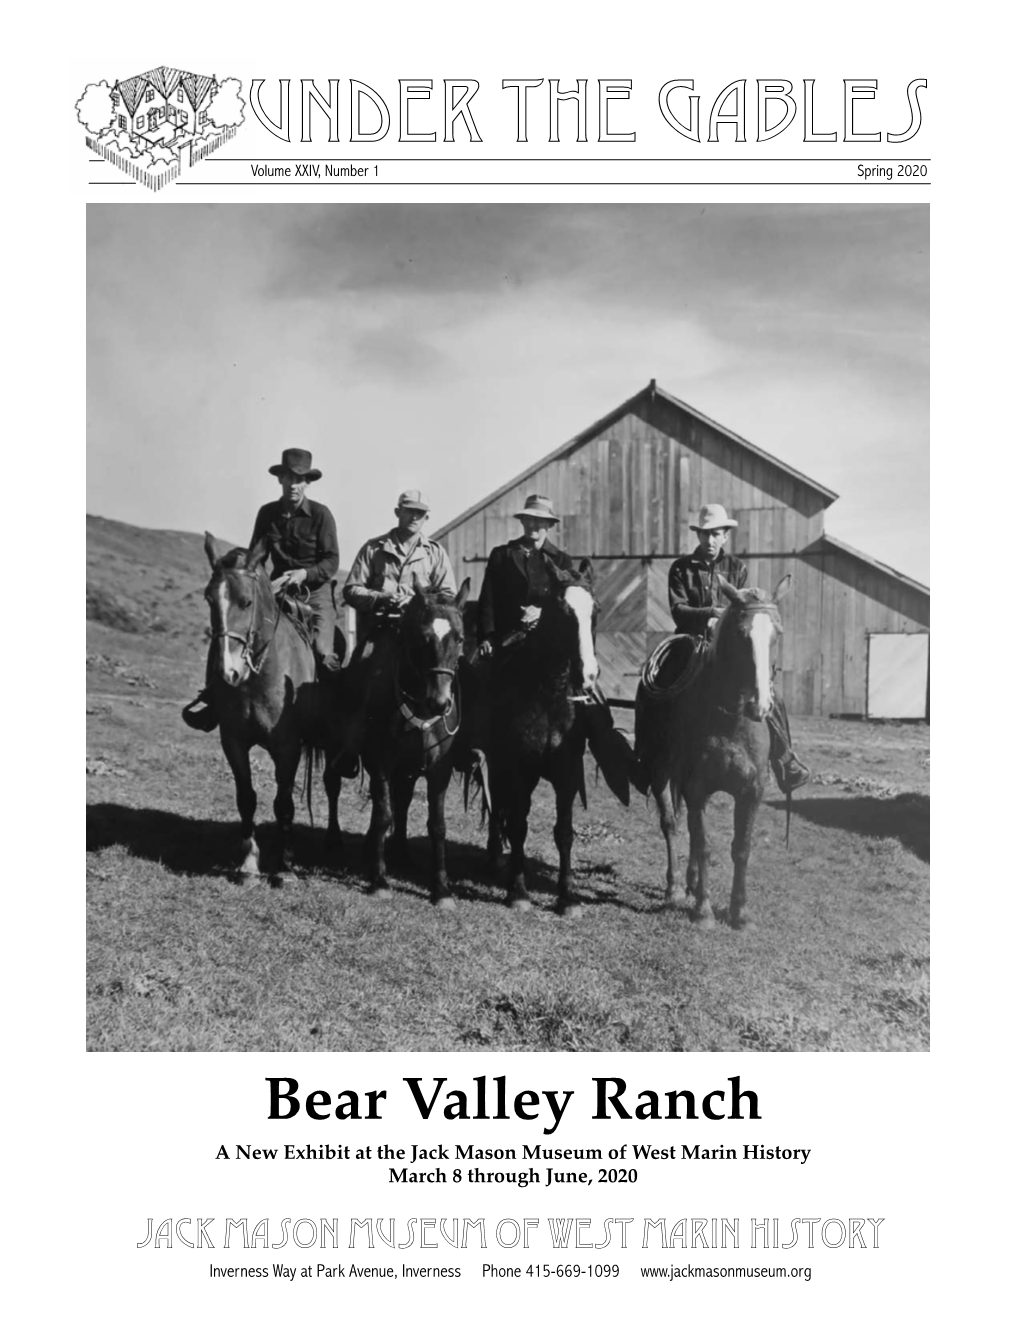 Bear Valley Ranch